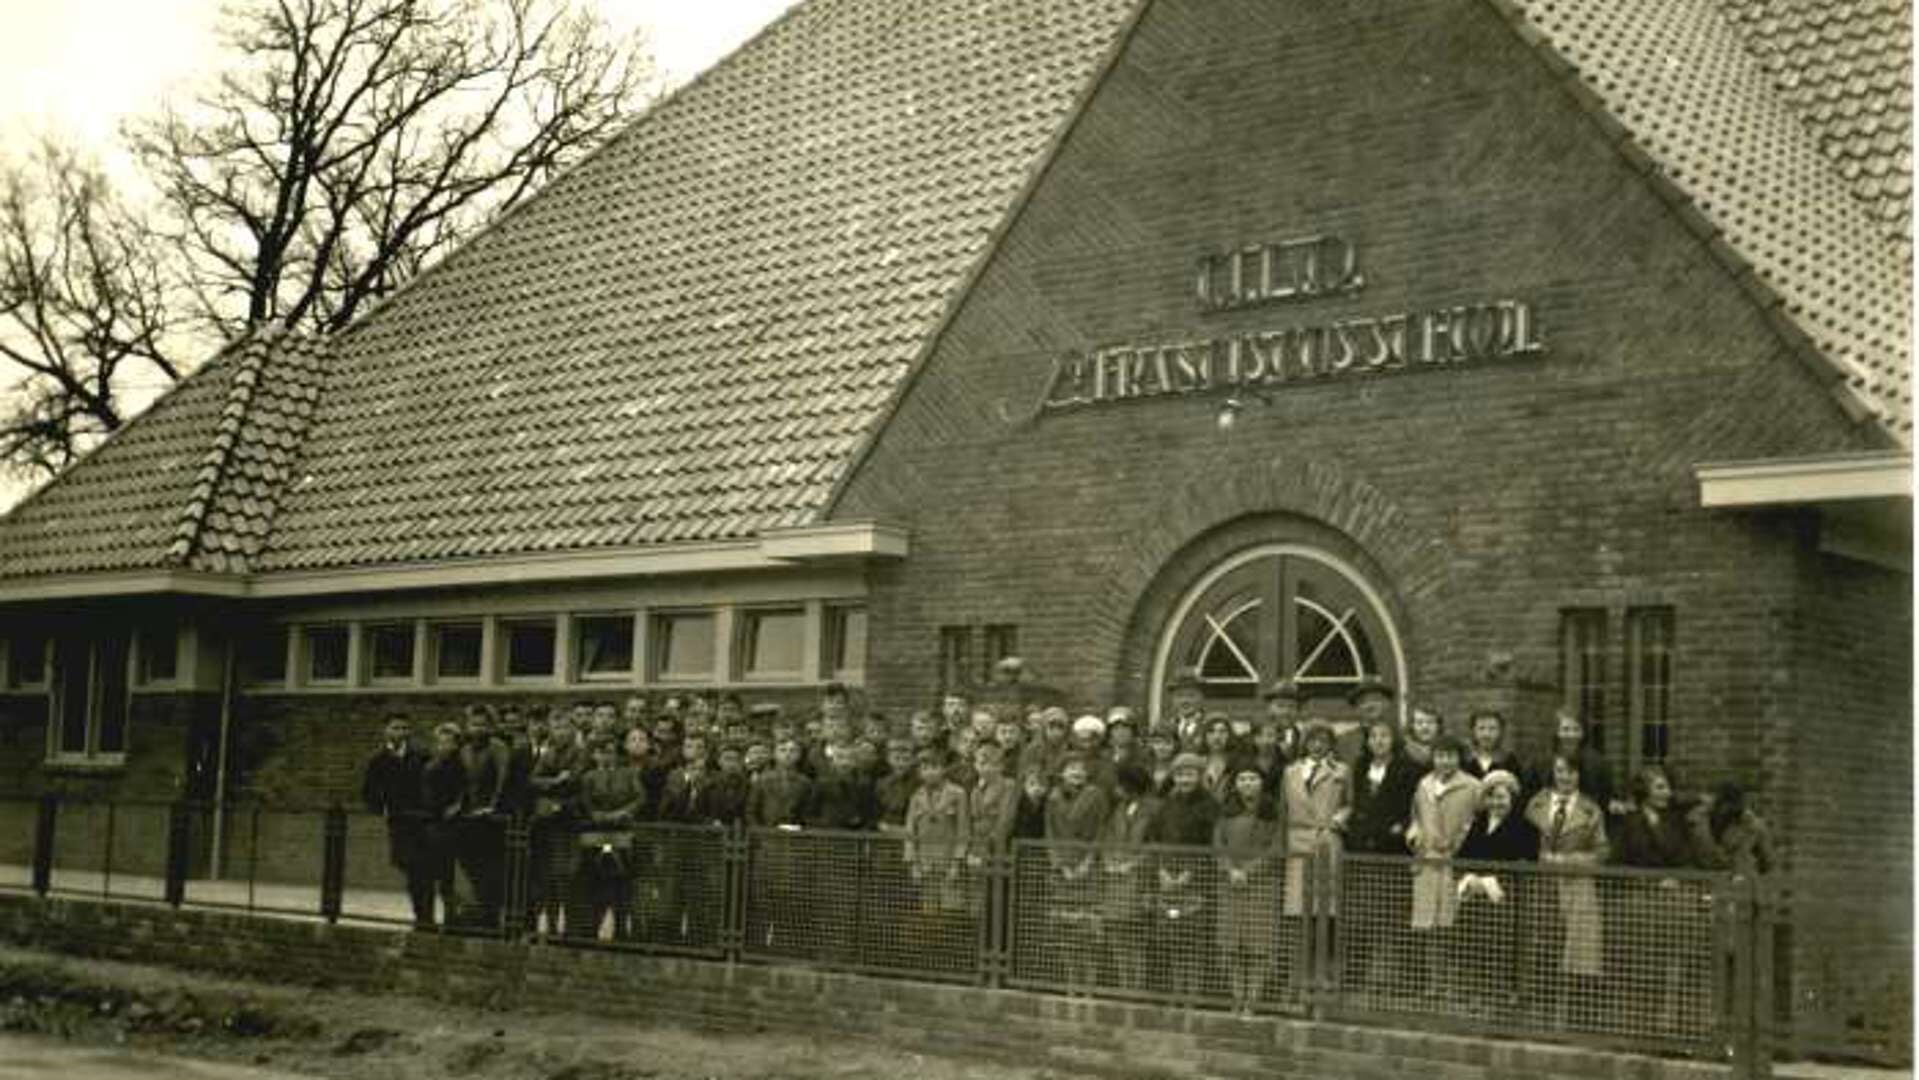 De voormalige St. Franciscus U.L.O. aan de Patronaatstraat omstreeks 1932. Nu het clubgebouw van de VOL. Bron: beeldbank Vereniging voor Oudheidkunde Lichtenvoorde